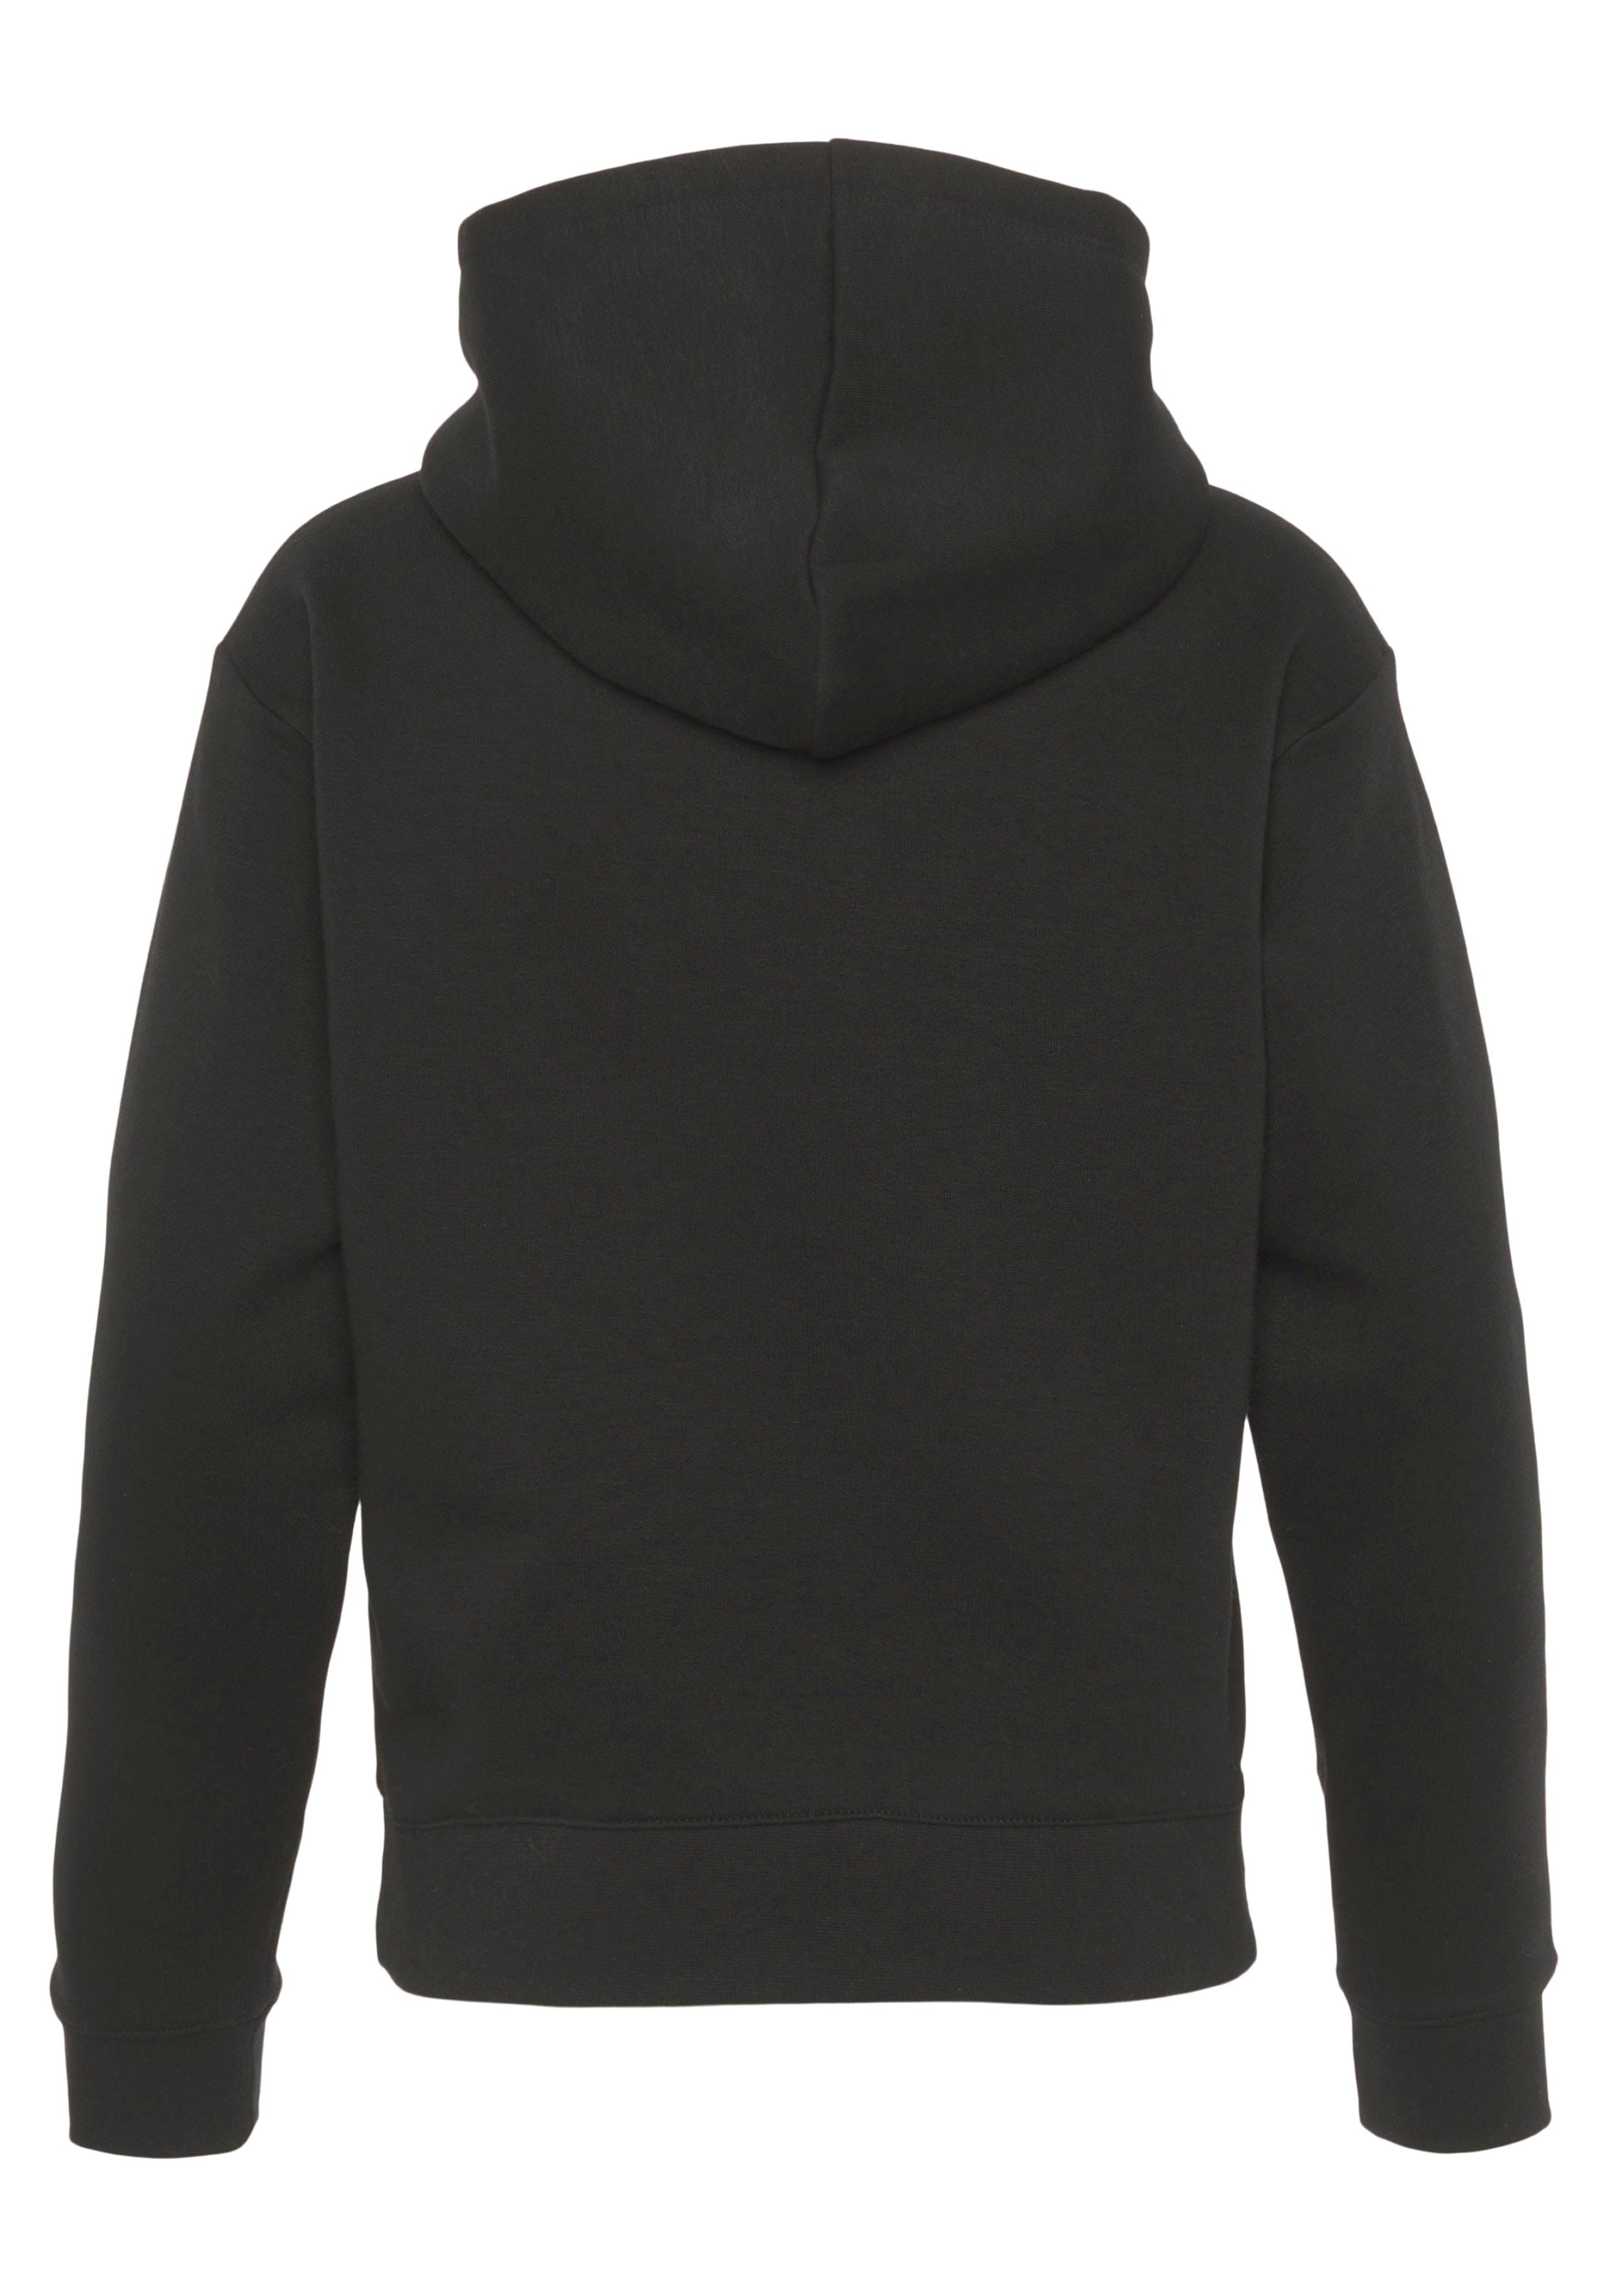 Basic - Kapuzensweatshirt Kinder Hooded black Sweatshirt Champion für